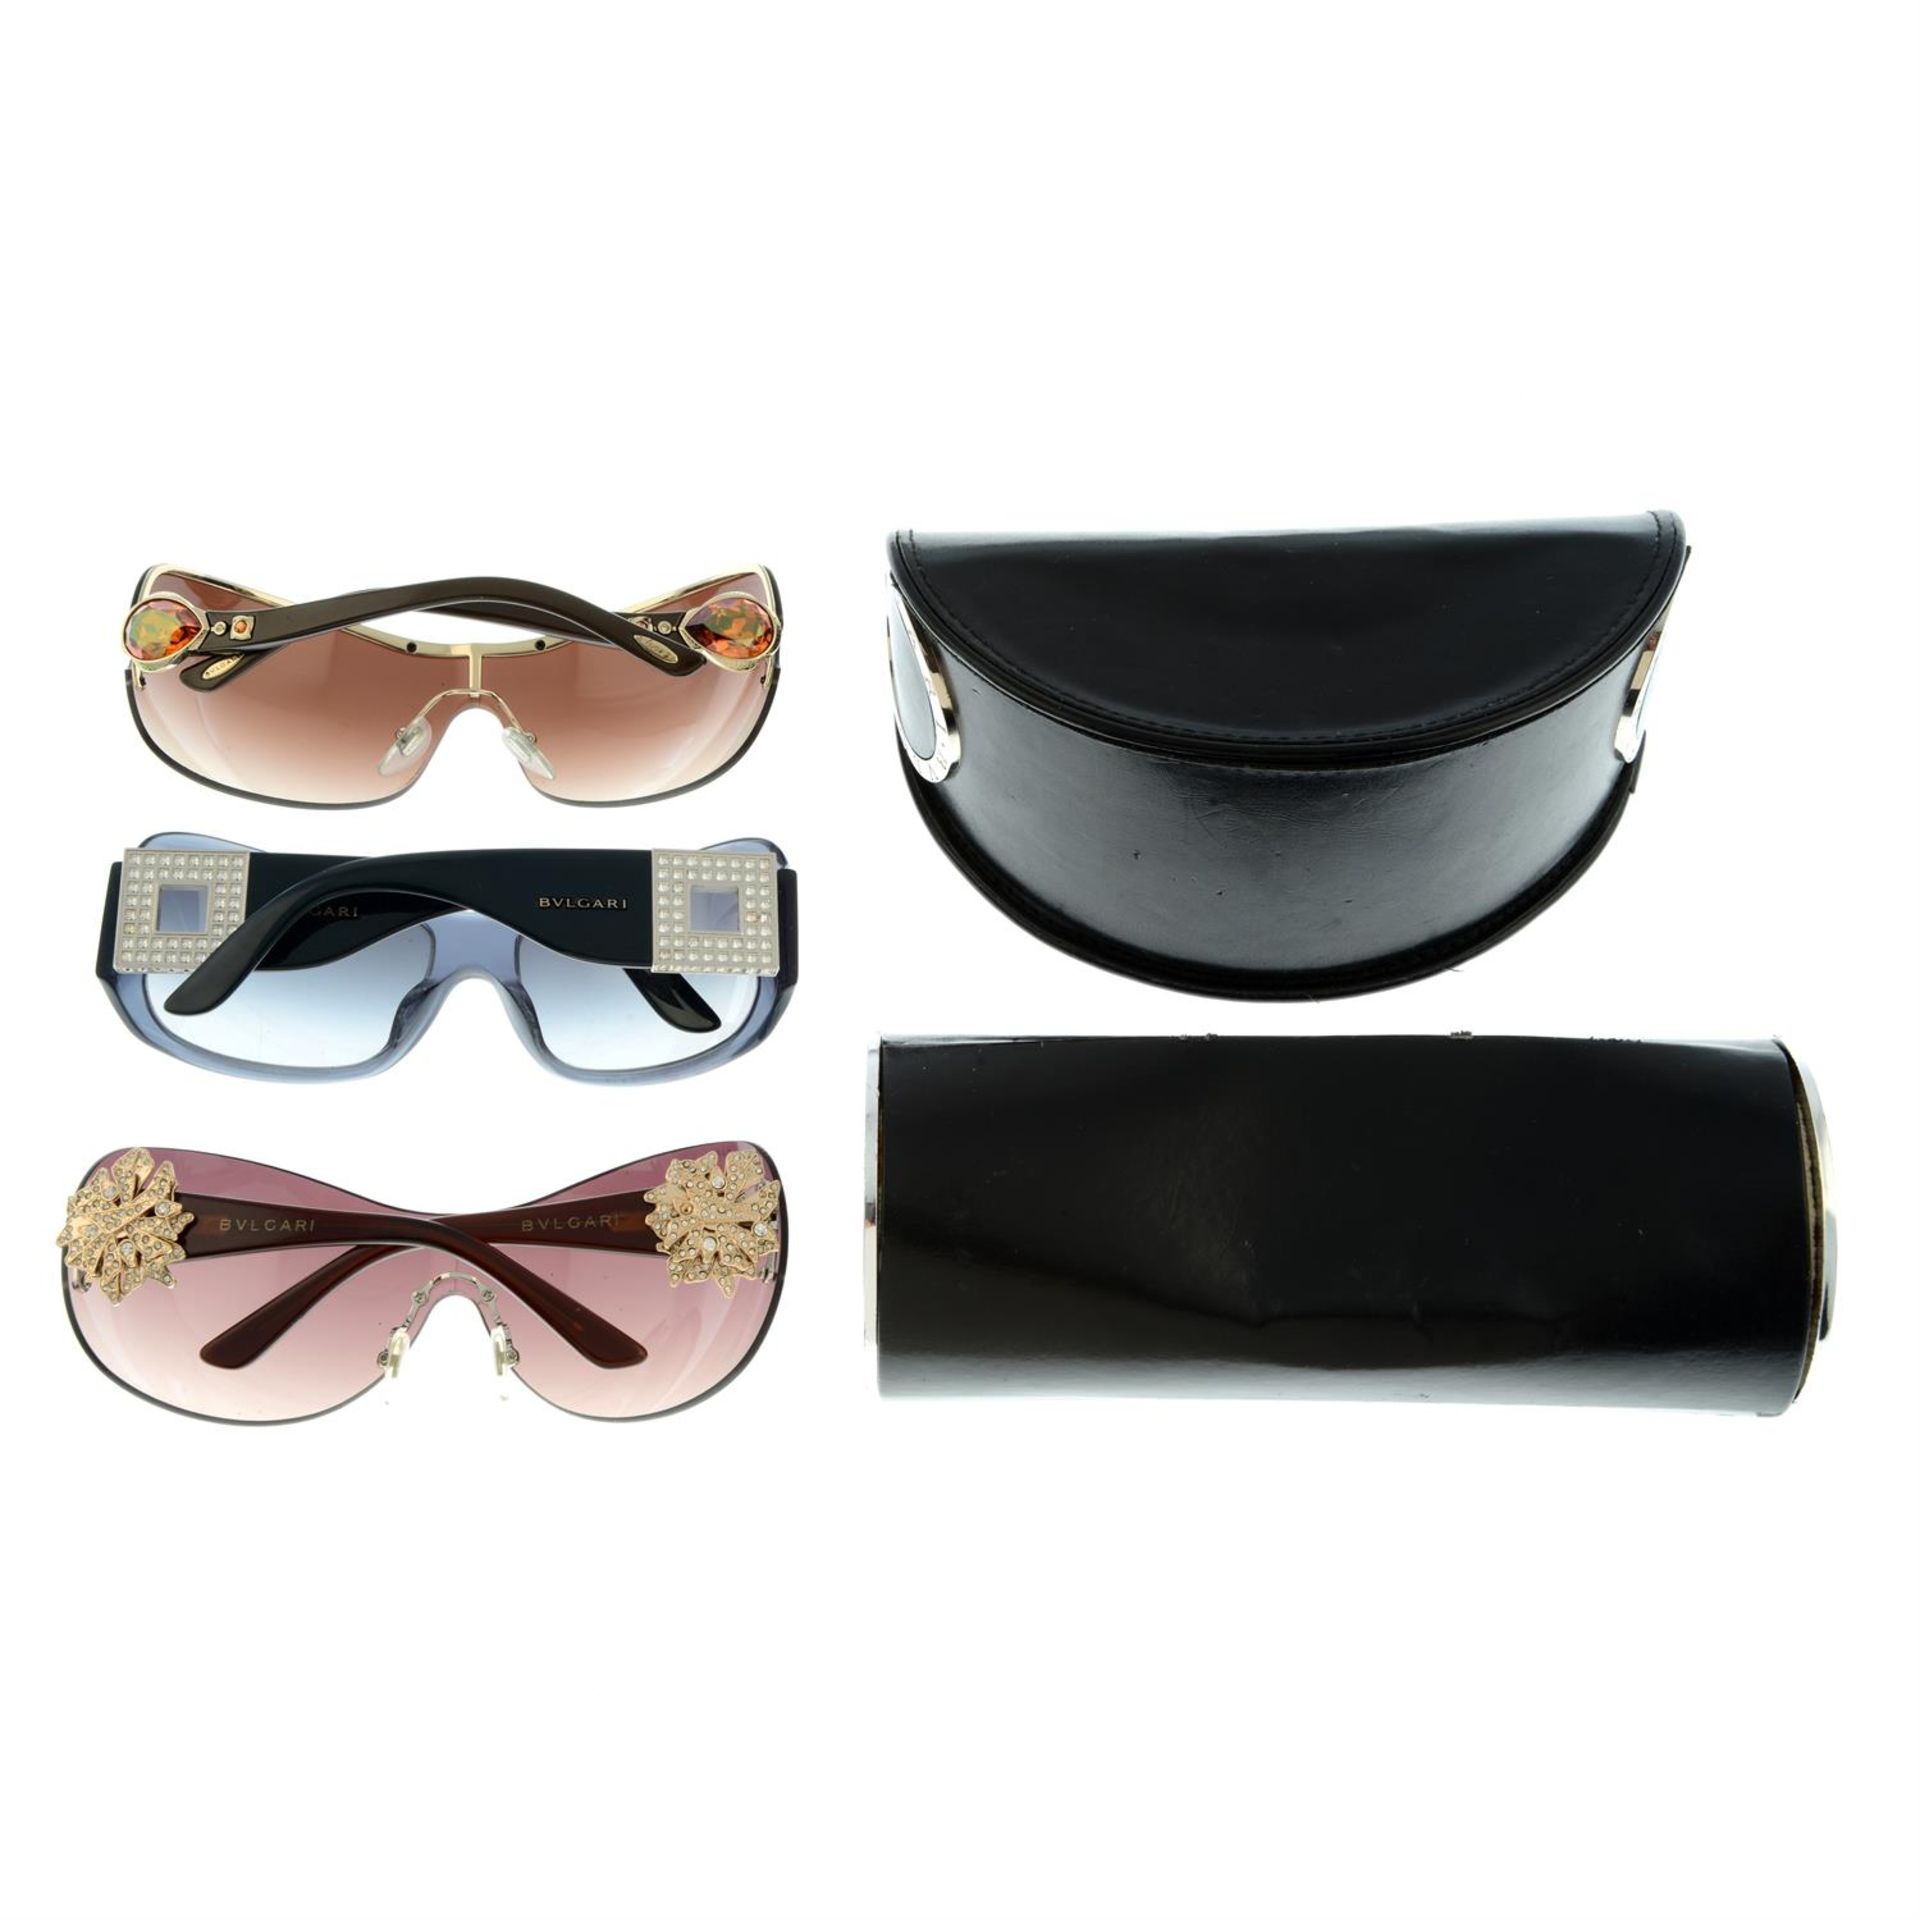 BULGARI - three pairs of sunglasses. - Image 2 of 2